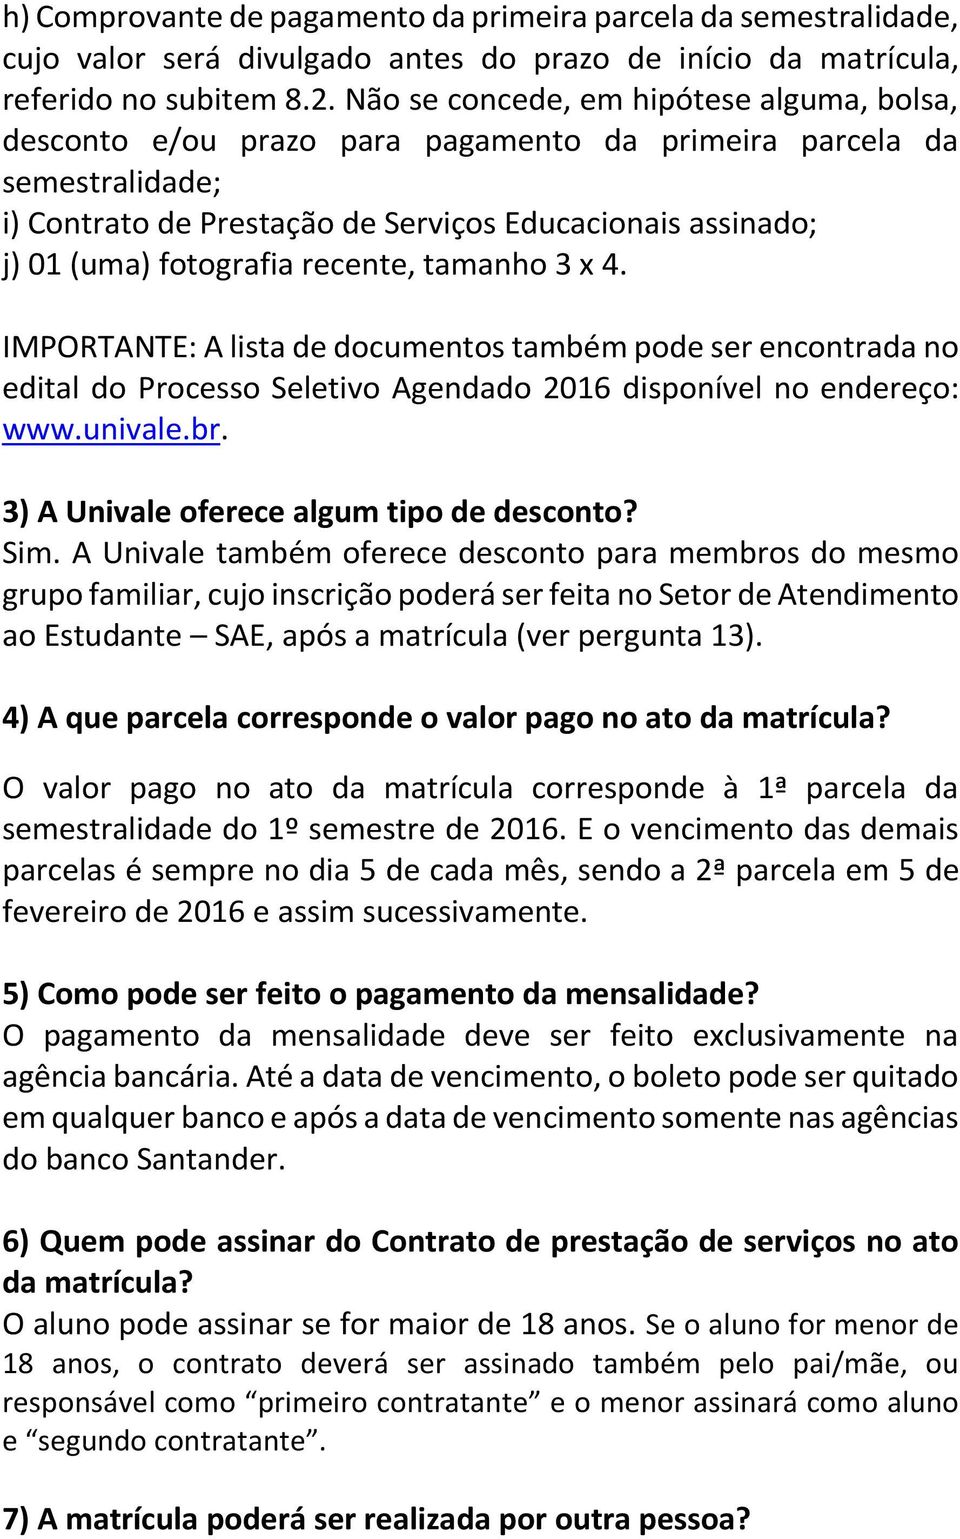 recente, tamanho 3 x 4. IMPORTANTE: A lista de documentos também pode ser encontrada no edital do Processo Seletivo Agendado 2016 disponível no endereço: www.univale.br.